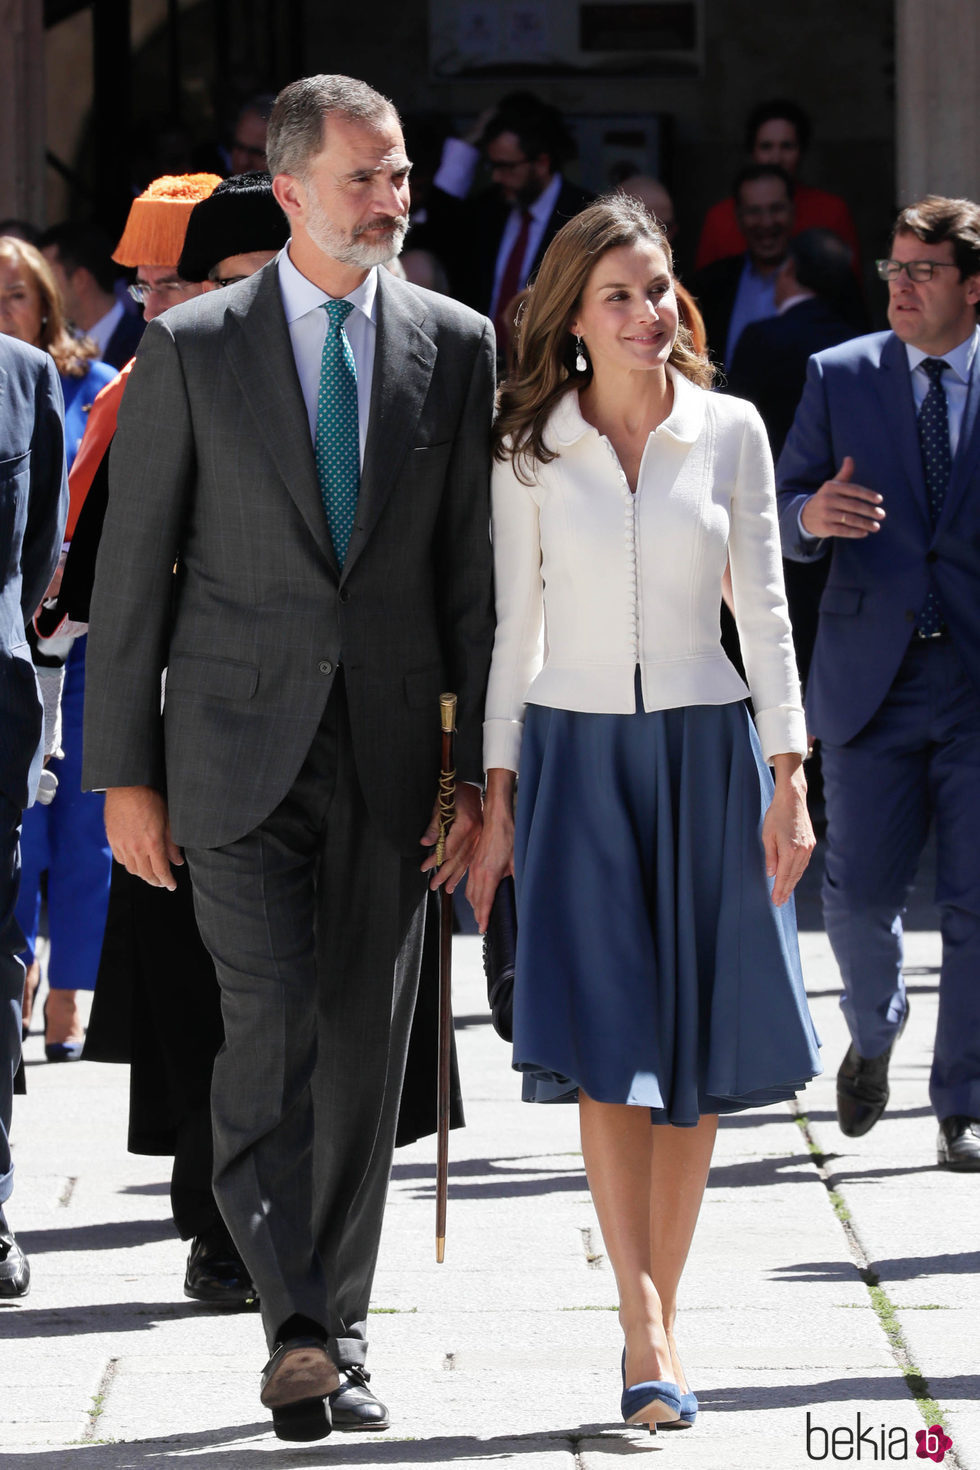 Los Reyes Felipe y Letizia en la inauguración del curso universitario en Salamanca